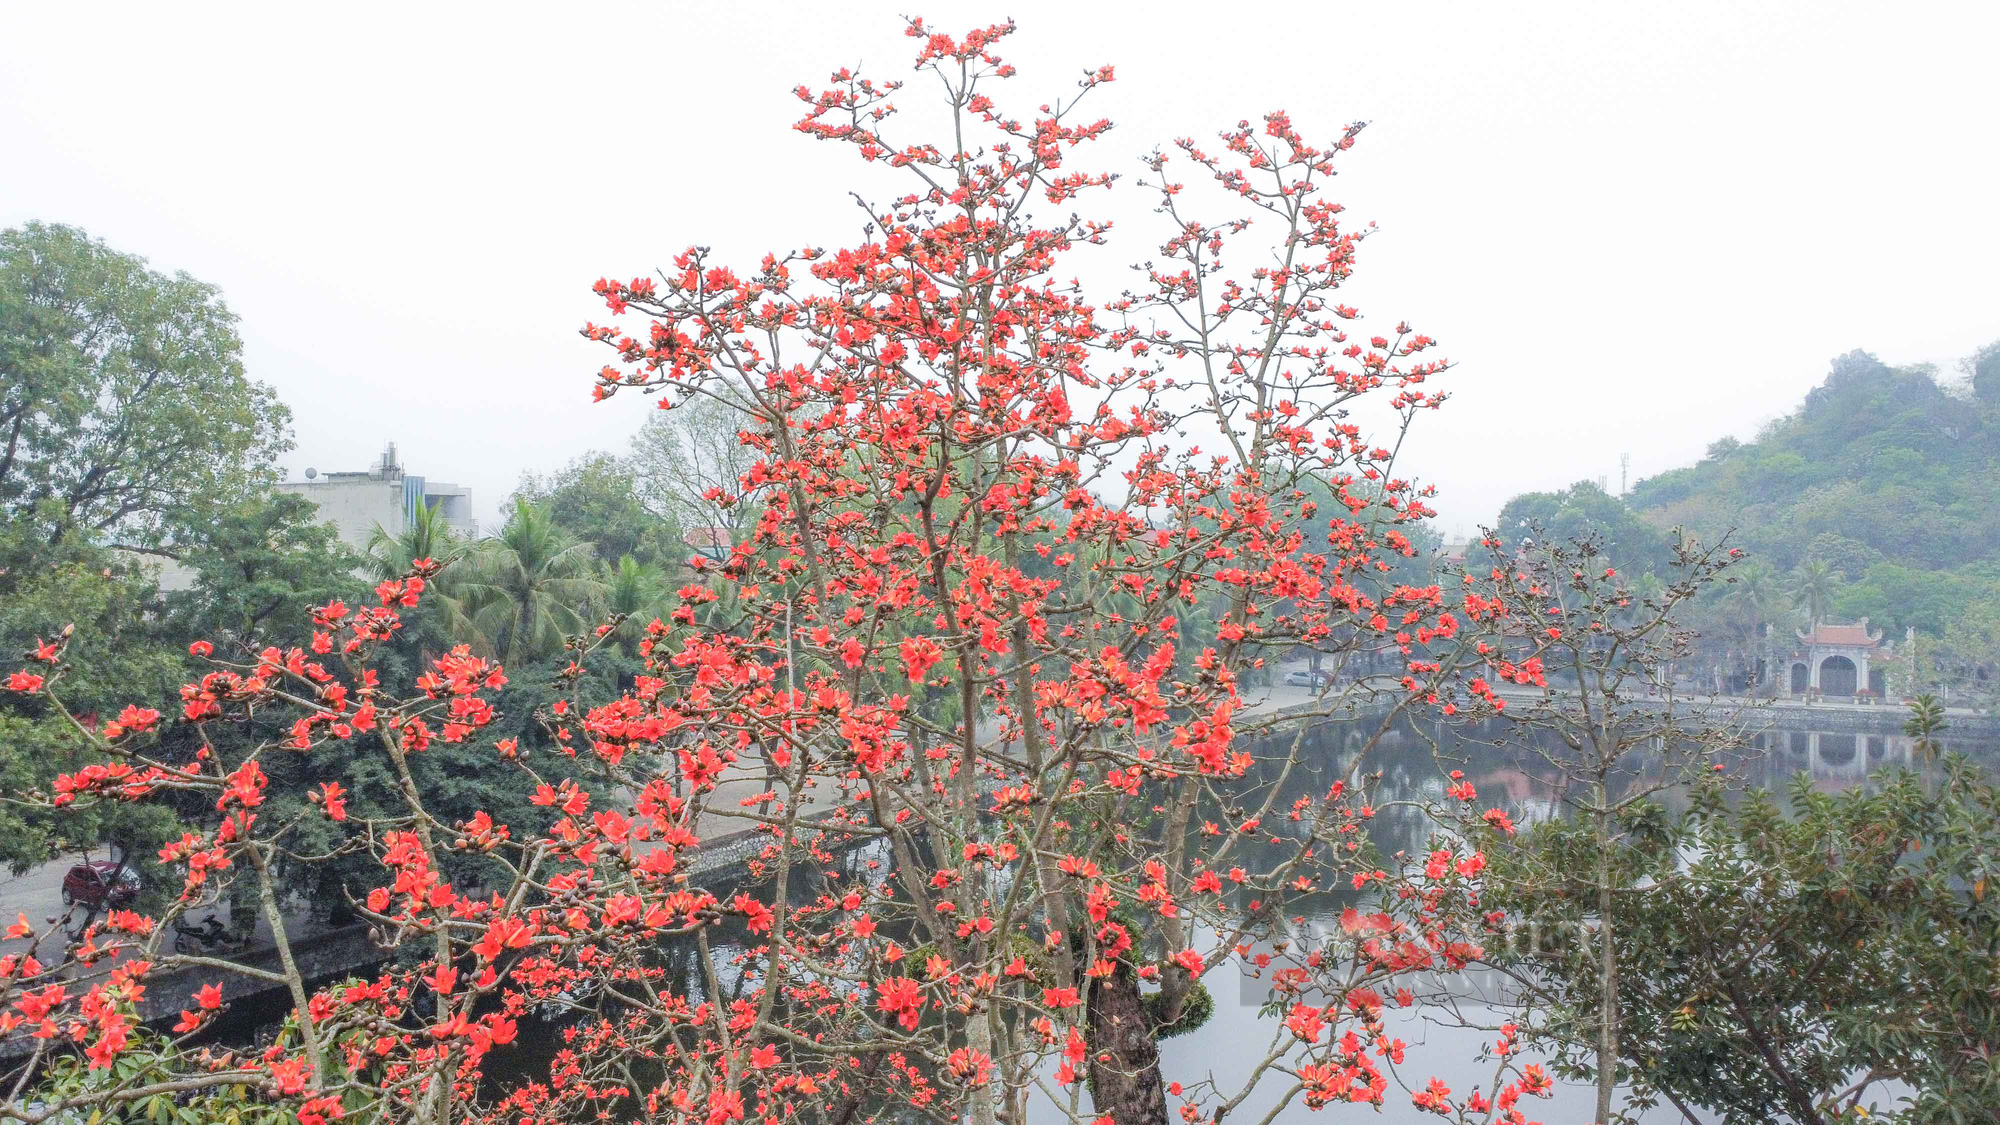 Hoa gạo nở đỏ rực bên ngôi chùa nghìn năm tuổi tại Hà Nội - Ảnh 4.